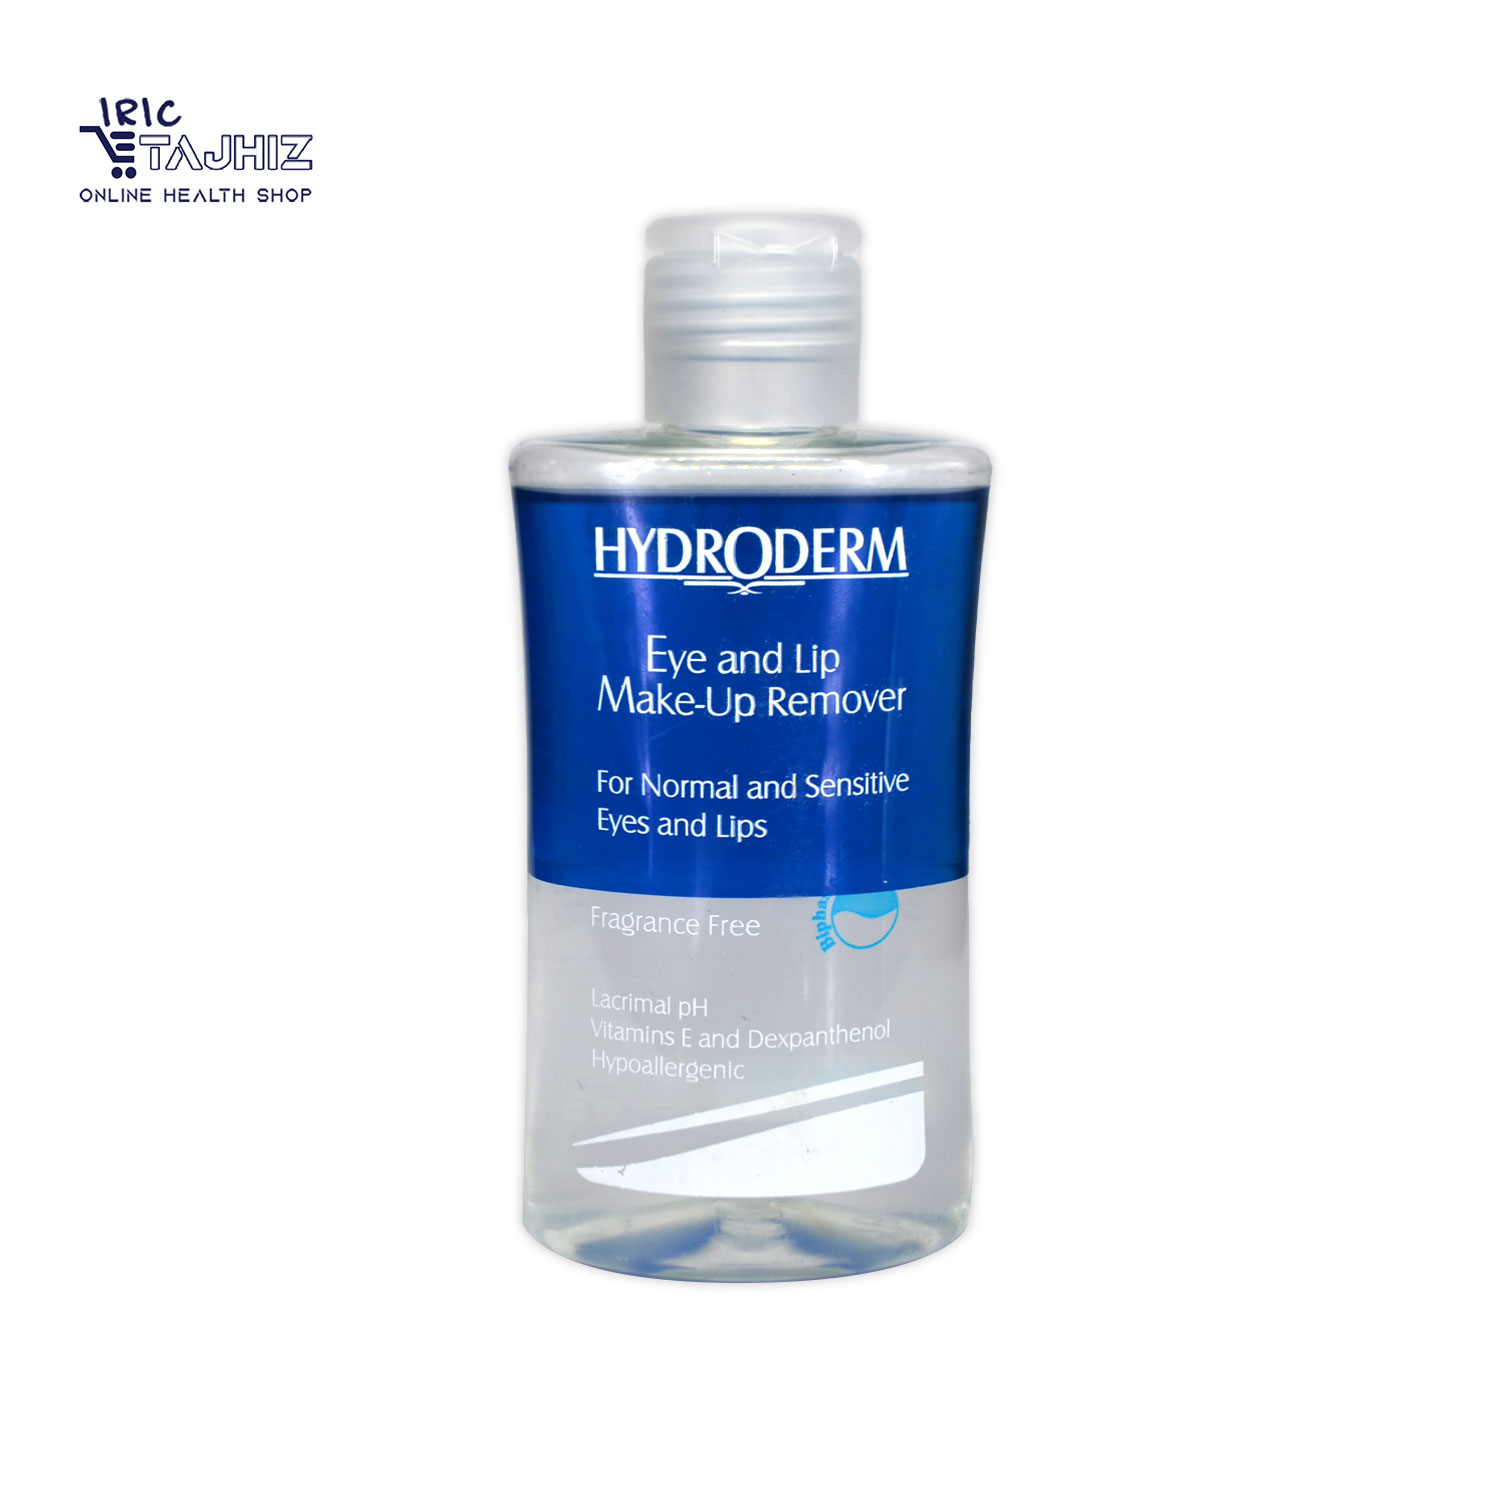 محلول دو فاز پاک کننده آرایش چشم و لب هیدرودرم HYDRODERM حجم 115 گرم